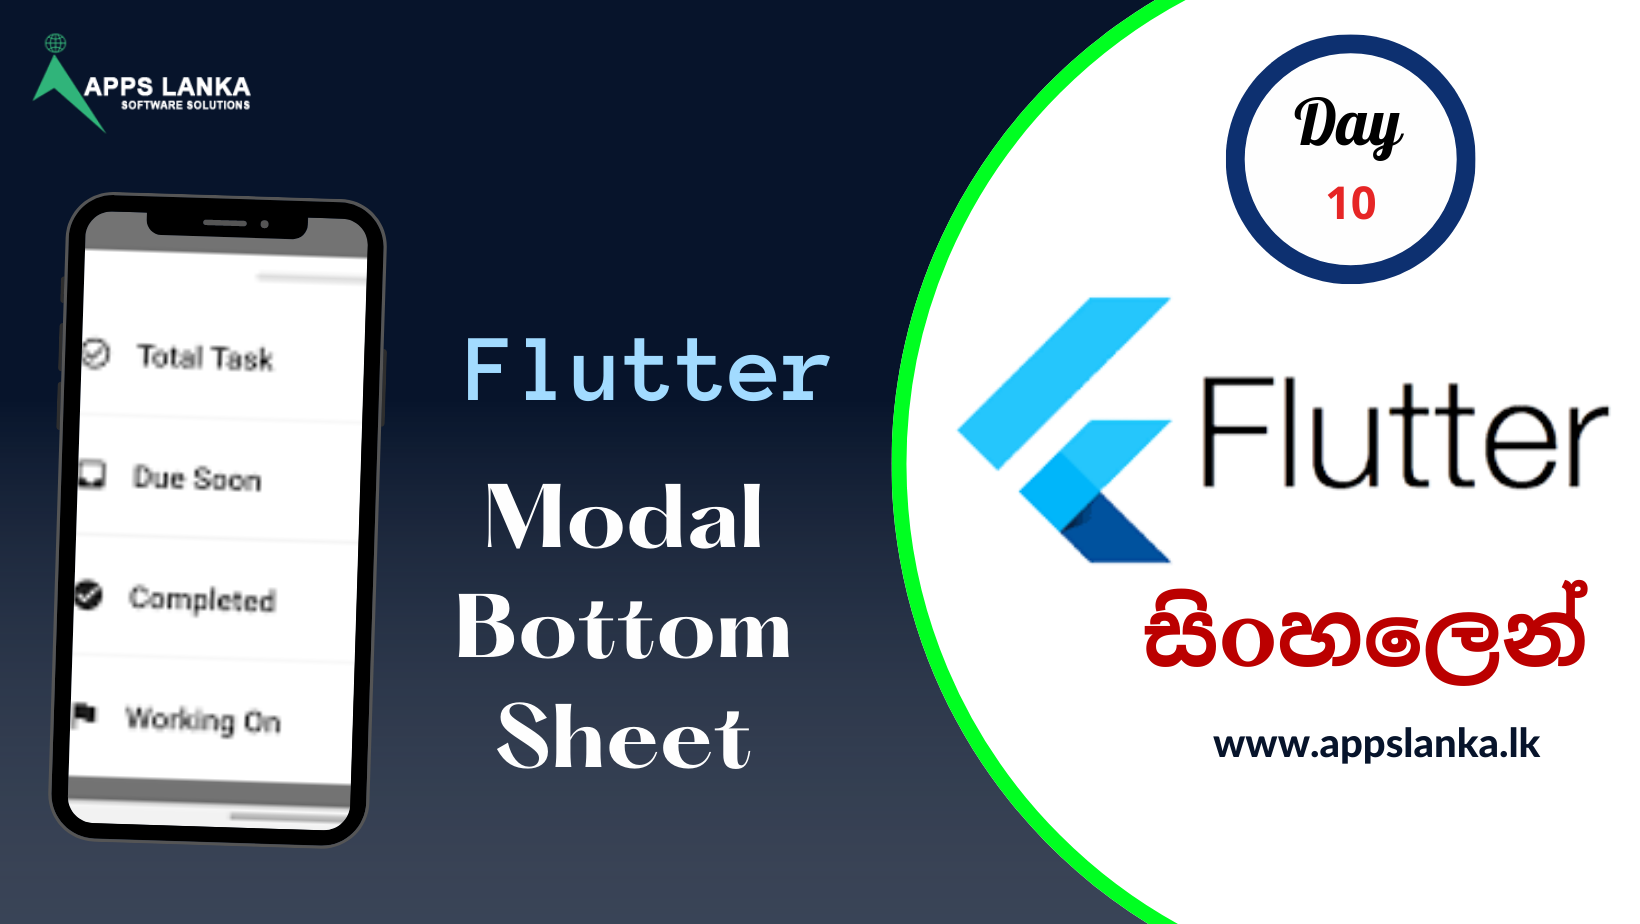 අද අපි කතා කරන්න යන්නේ Flutter Model Bottom Sheet එක ගැන…